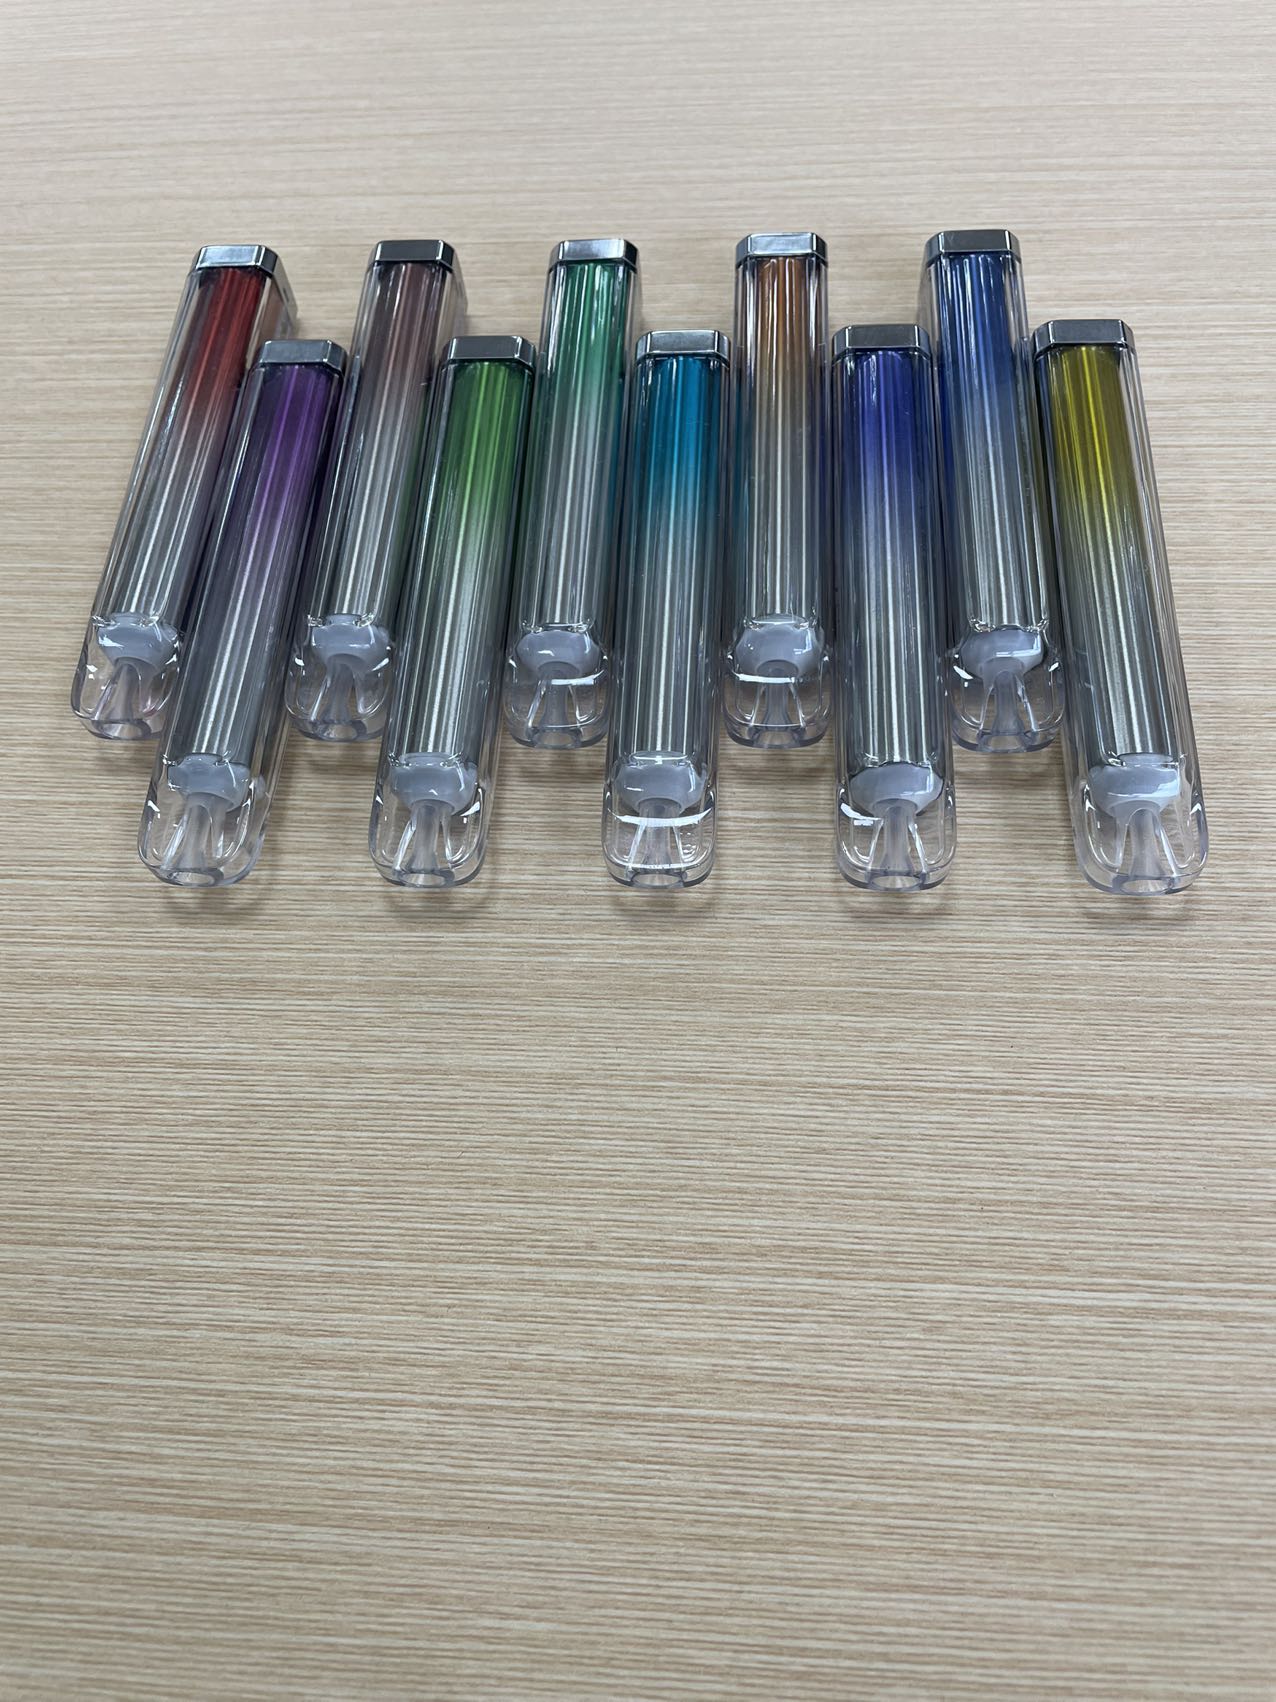 Runfree vape pen ecig for sale for vaporizer-1